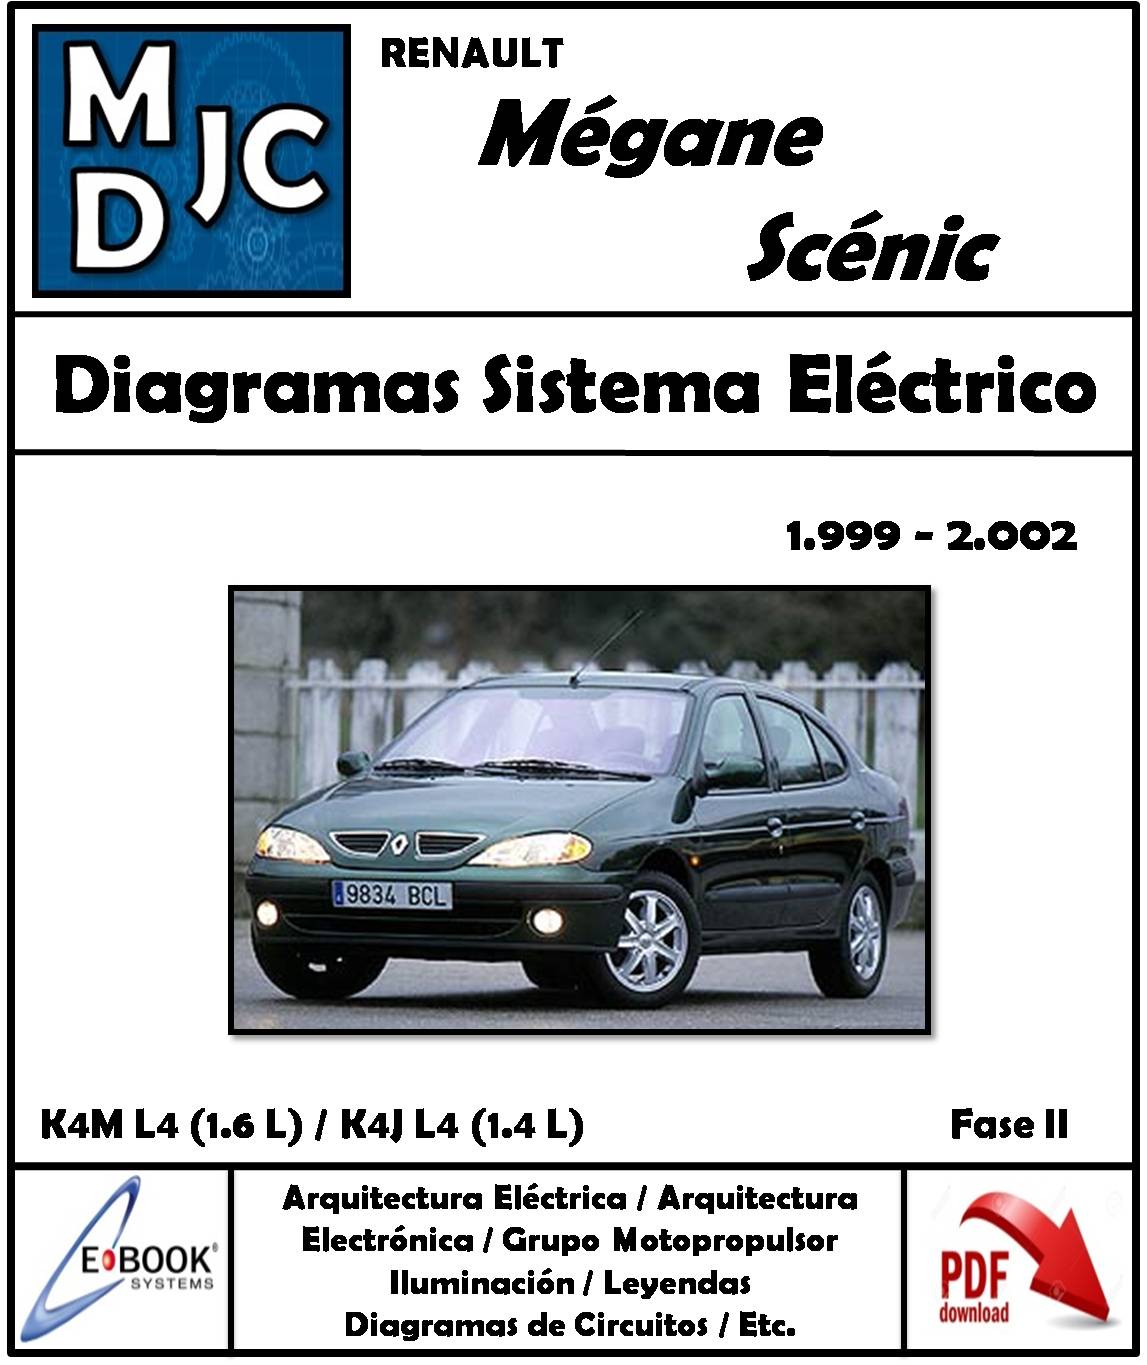 Renault Megane Classic / Scenic 1999 - 2002